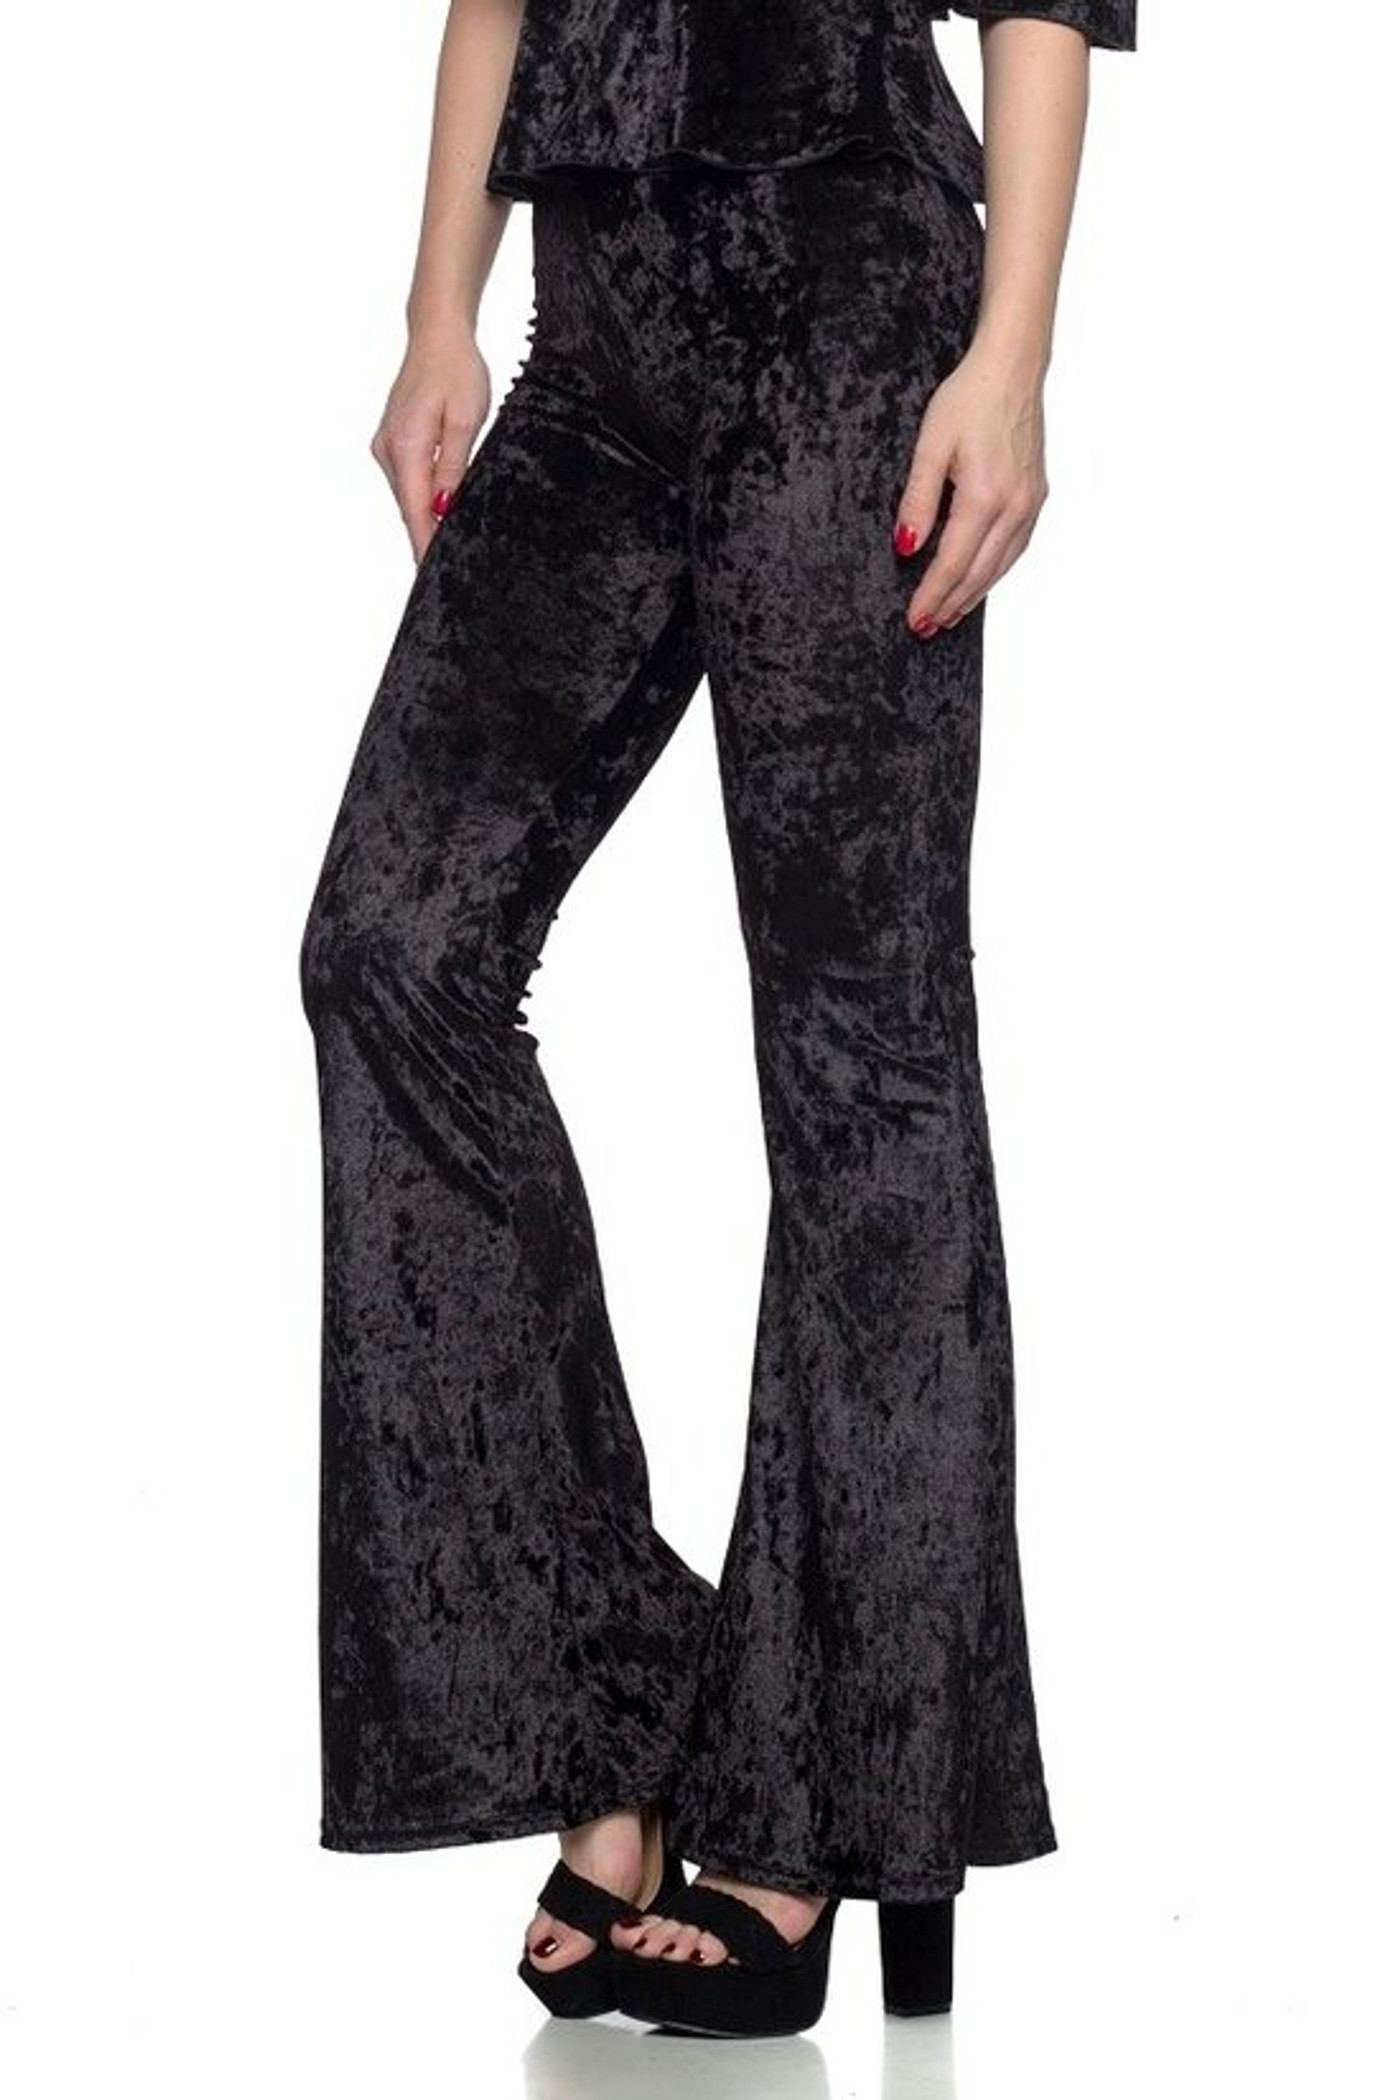 Women's pants KILLSTAR - Mahina Velvet Bell Bottoms - Black - KSRA005159 -  Metalshop.us